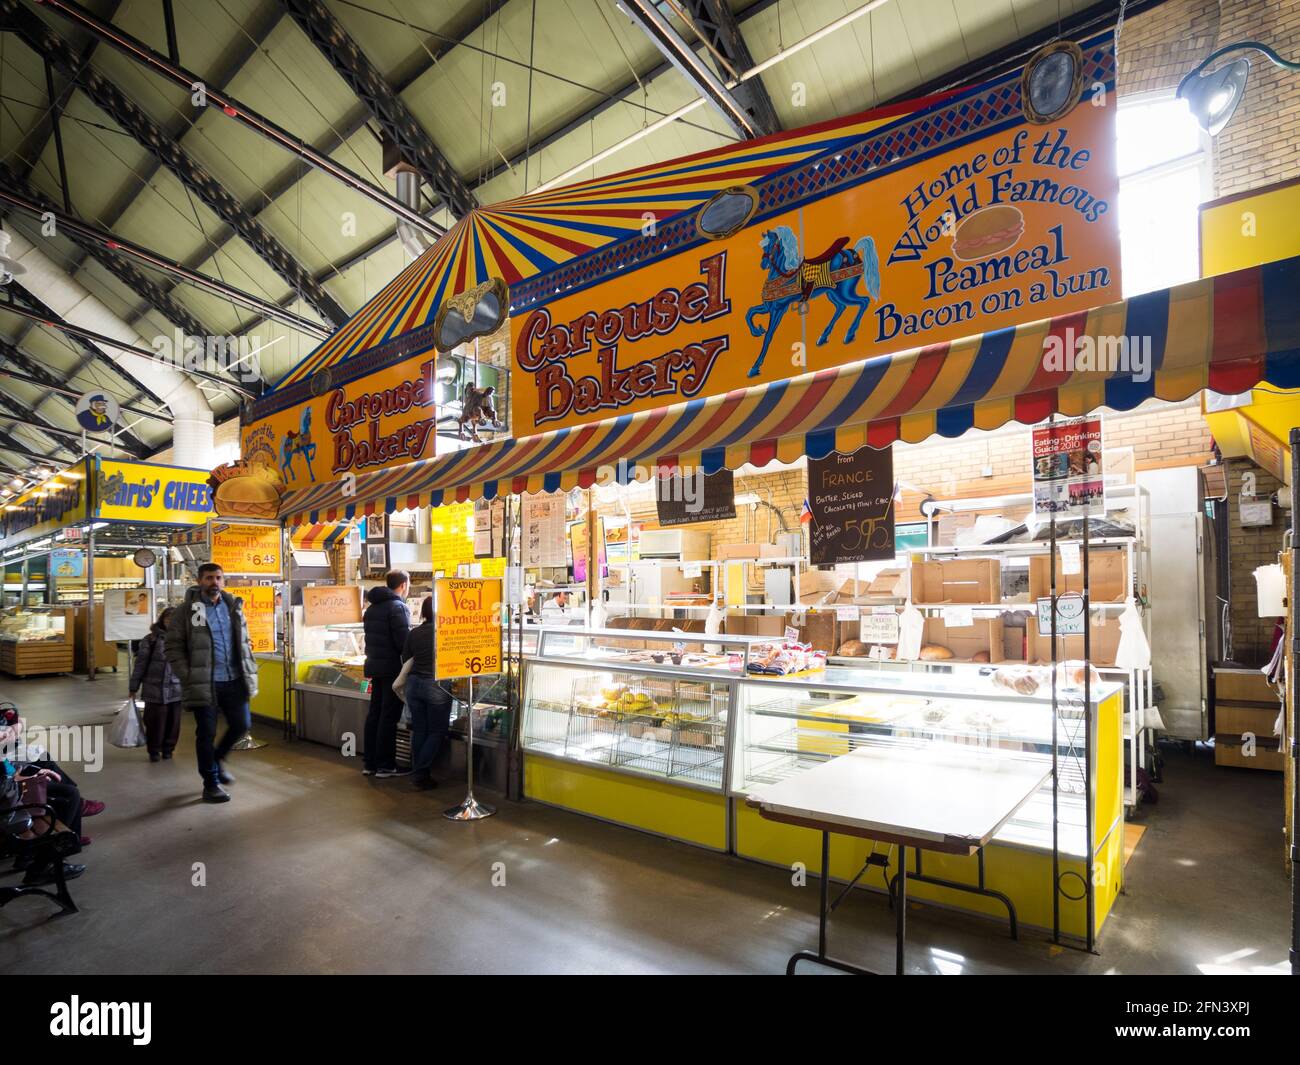 La Carousel Bakery, sede del famosissimo panino con bacon di peameale, presso il St. Lawrence Market di Toronto, Ontario, Canada. Foto Stock